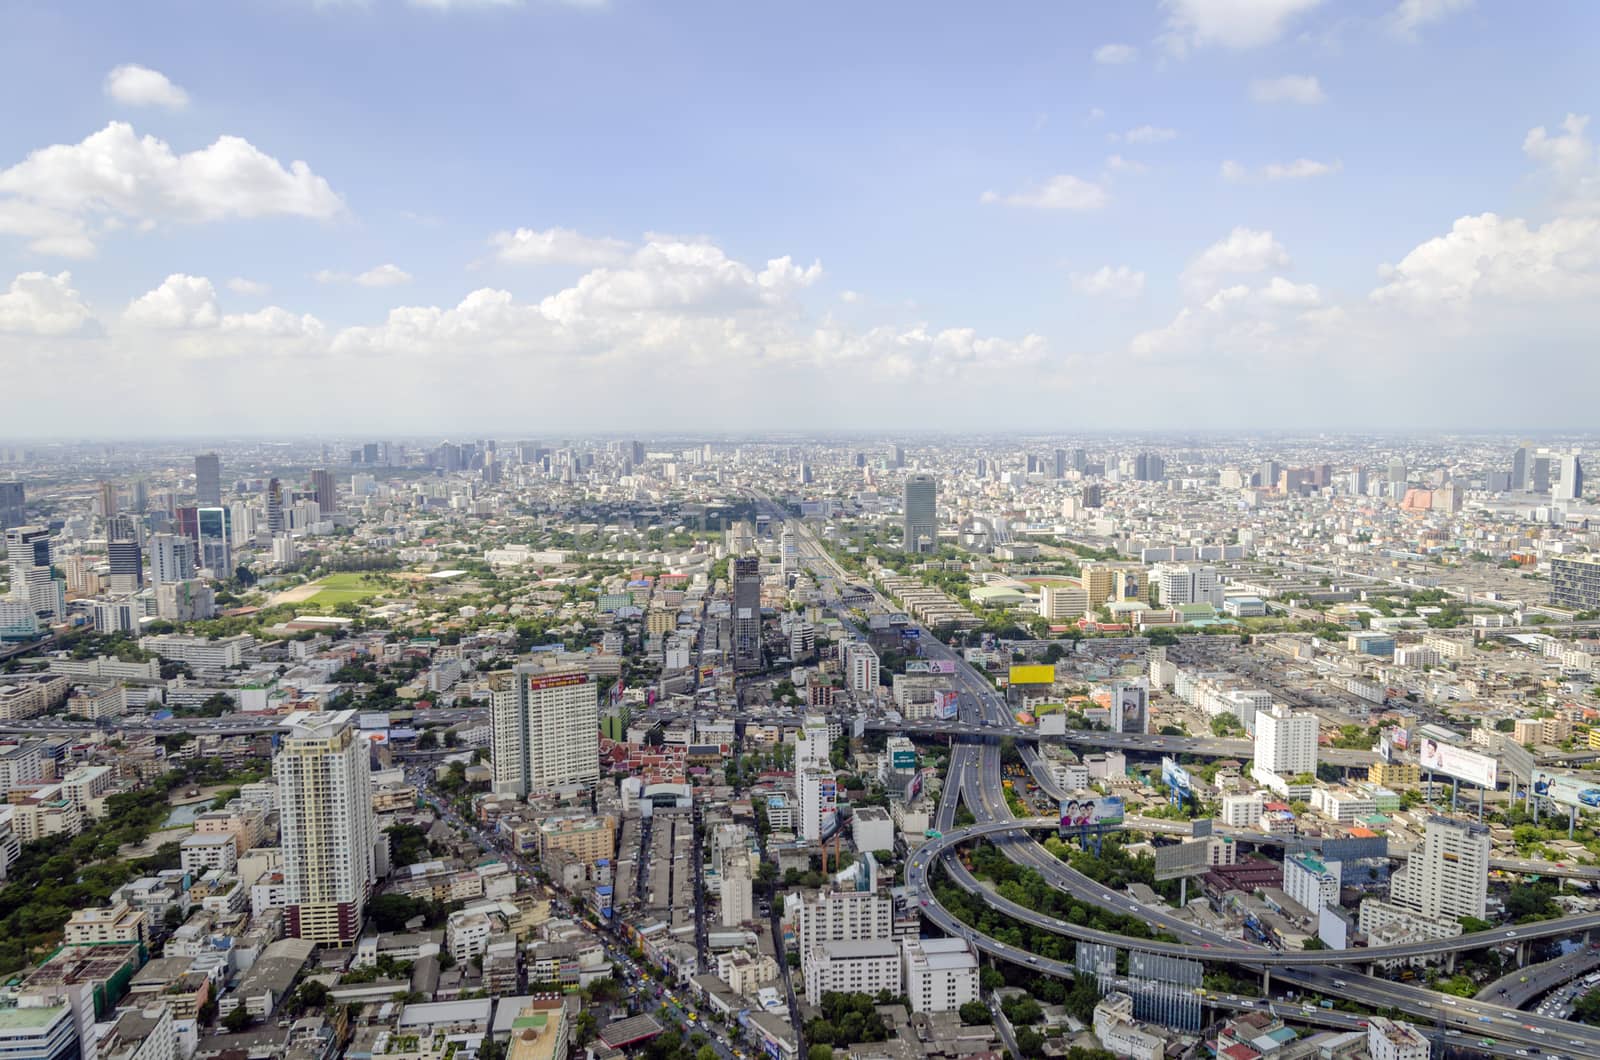 bangkok view from baiyoke tower II on 3 July 2014 BANGKOK - July by siiixth